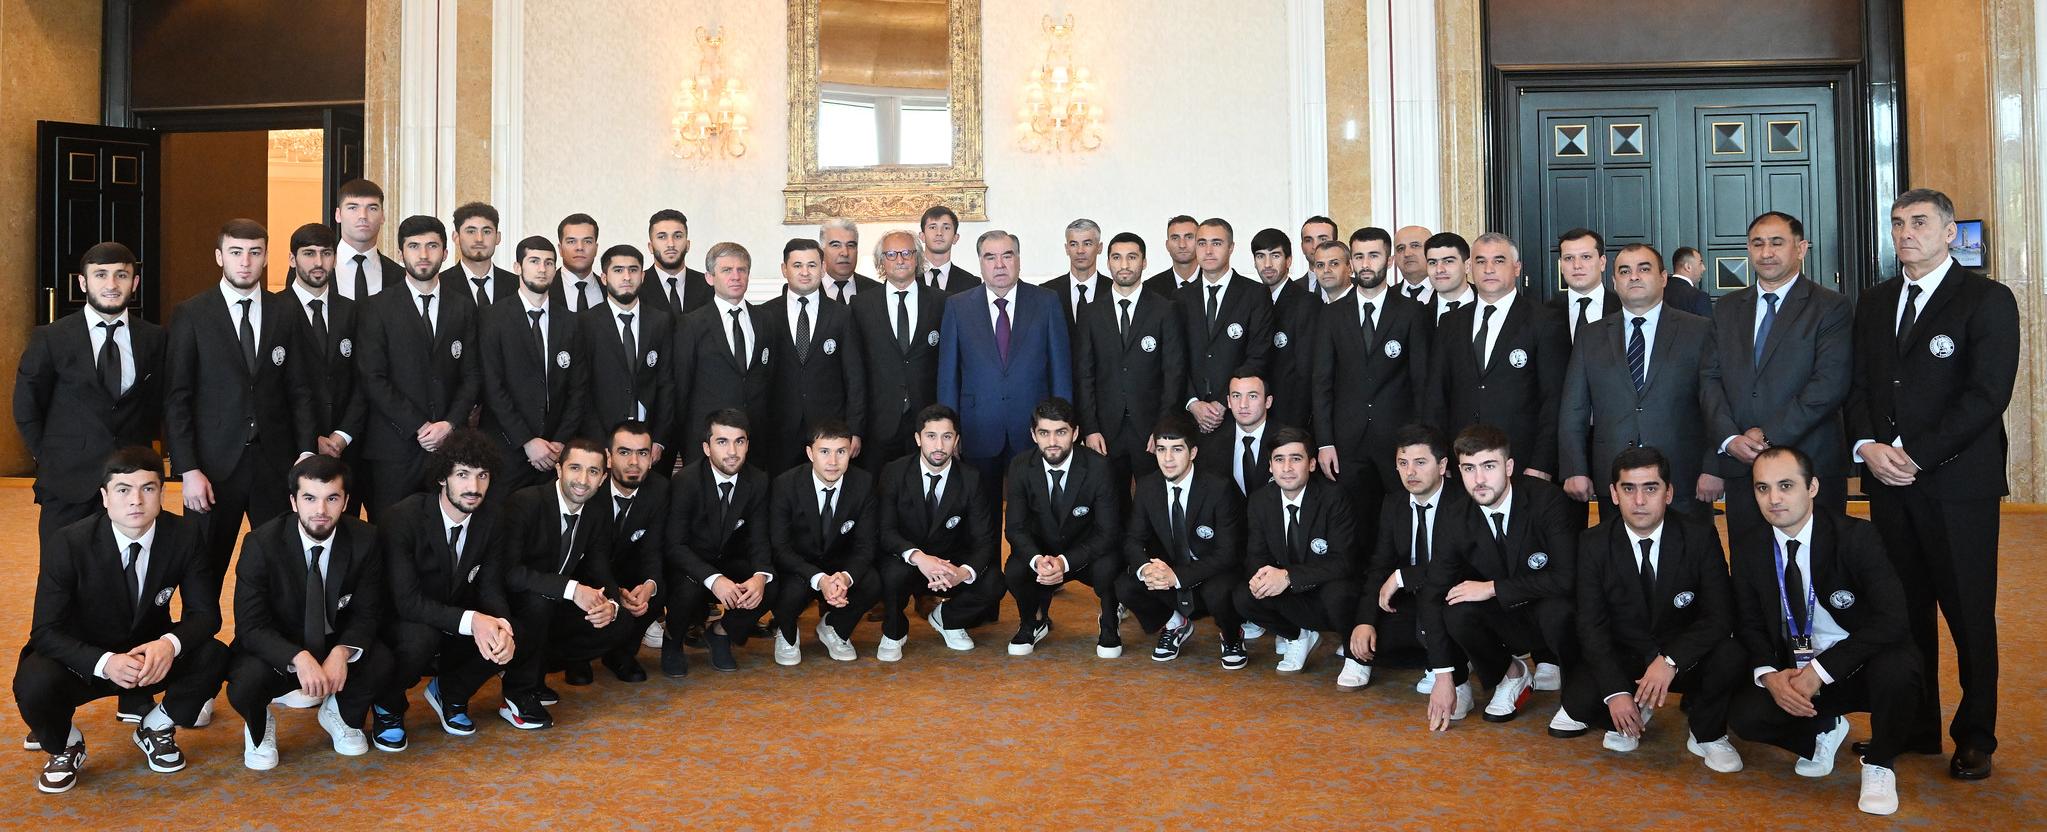 Поздравляем национальную сборную команду Таджикистана по футболу с выходом в четвертьфинал Кубка Азии